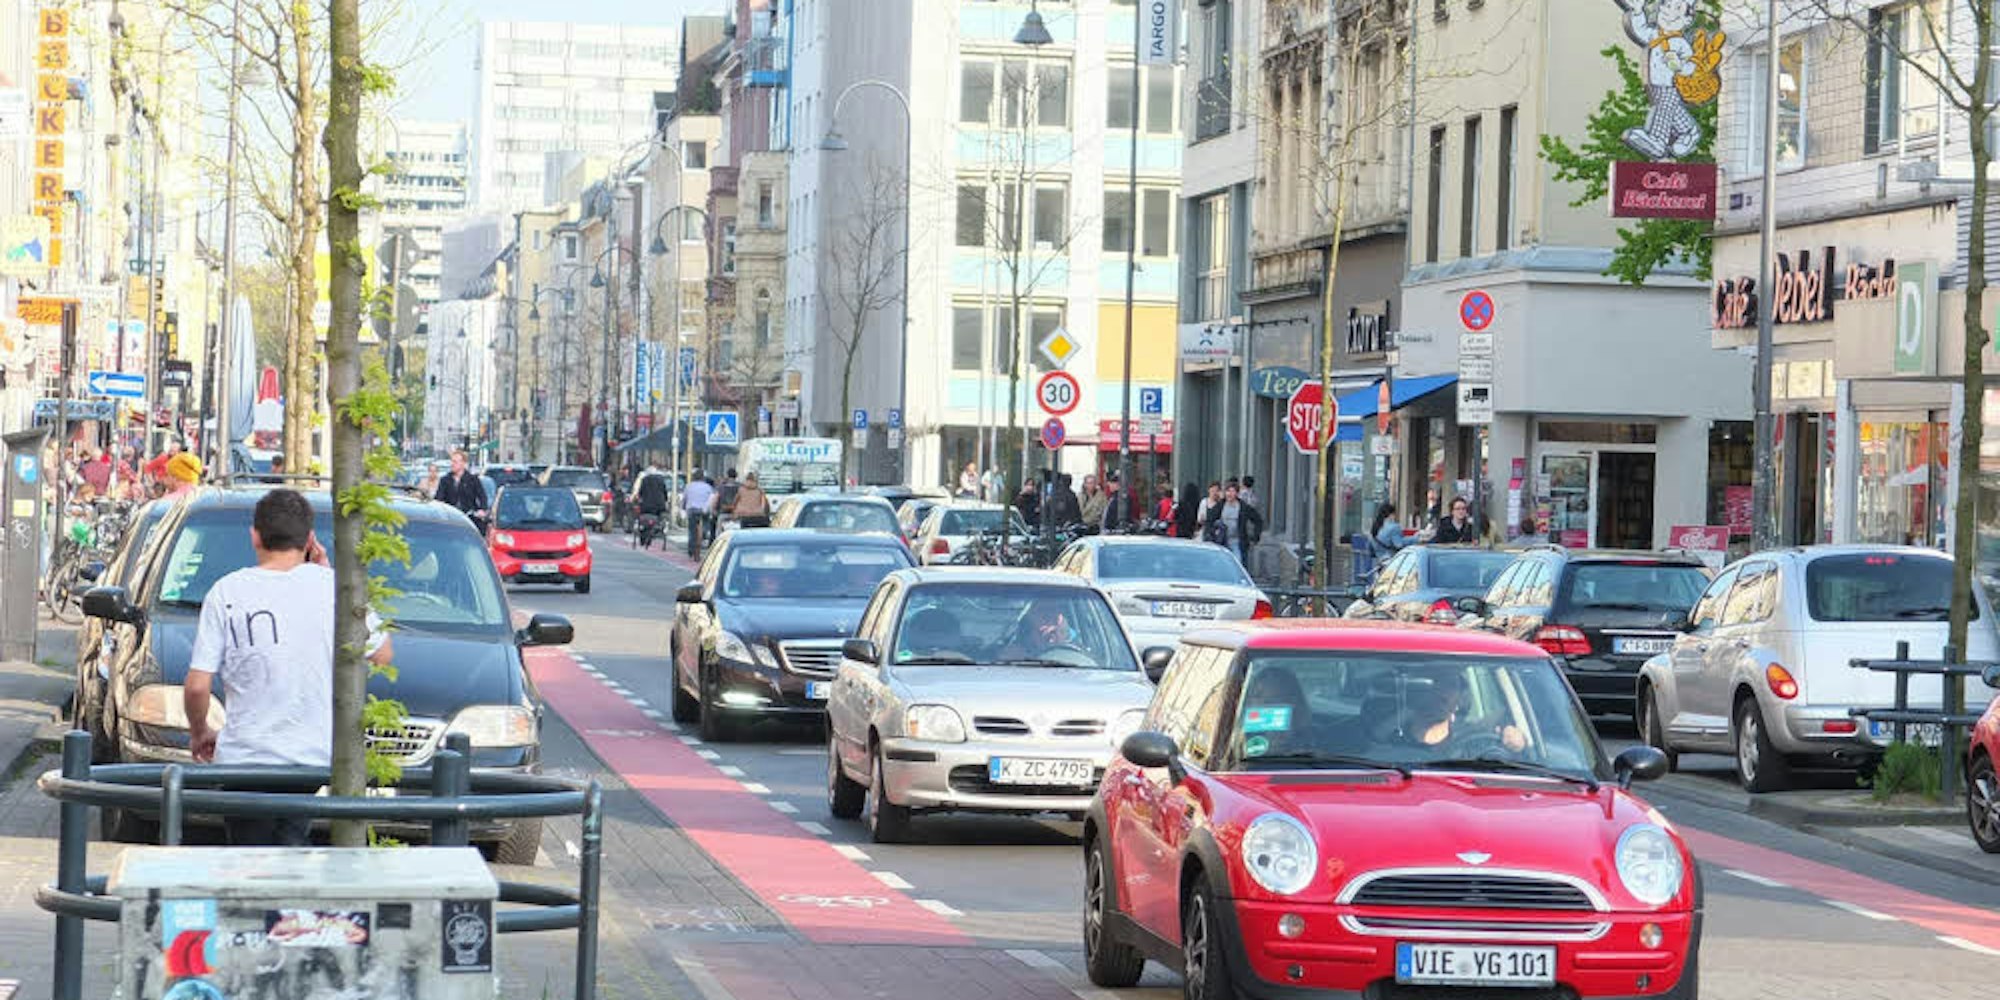 Die Venloer Straße weist laut Lärmaktionsplan eine hohe Belastung auf.